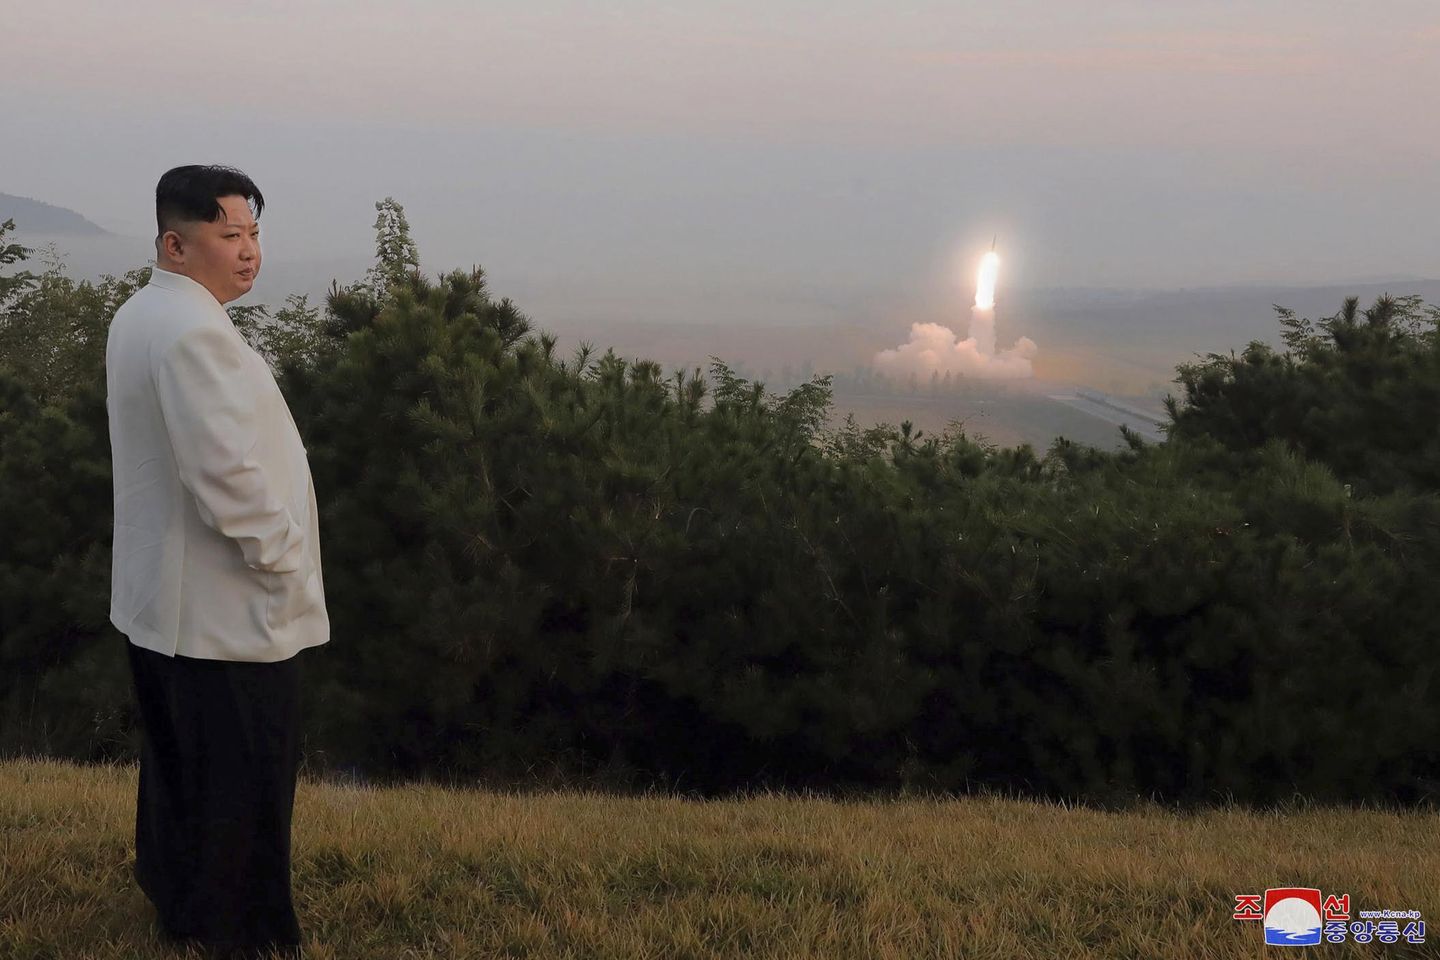 Kuzey Kore, Putin'in nükleer tehditlerinden ilham alıyor